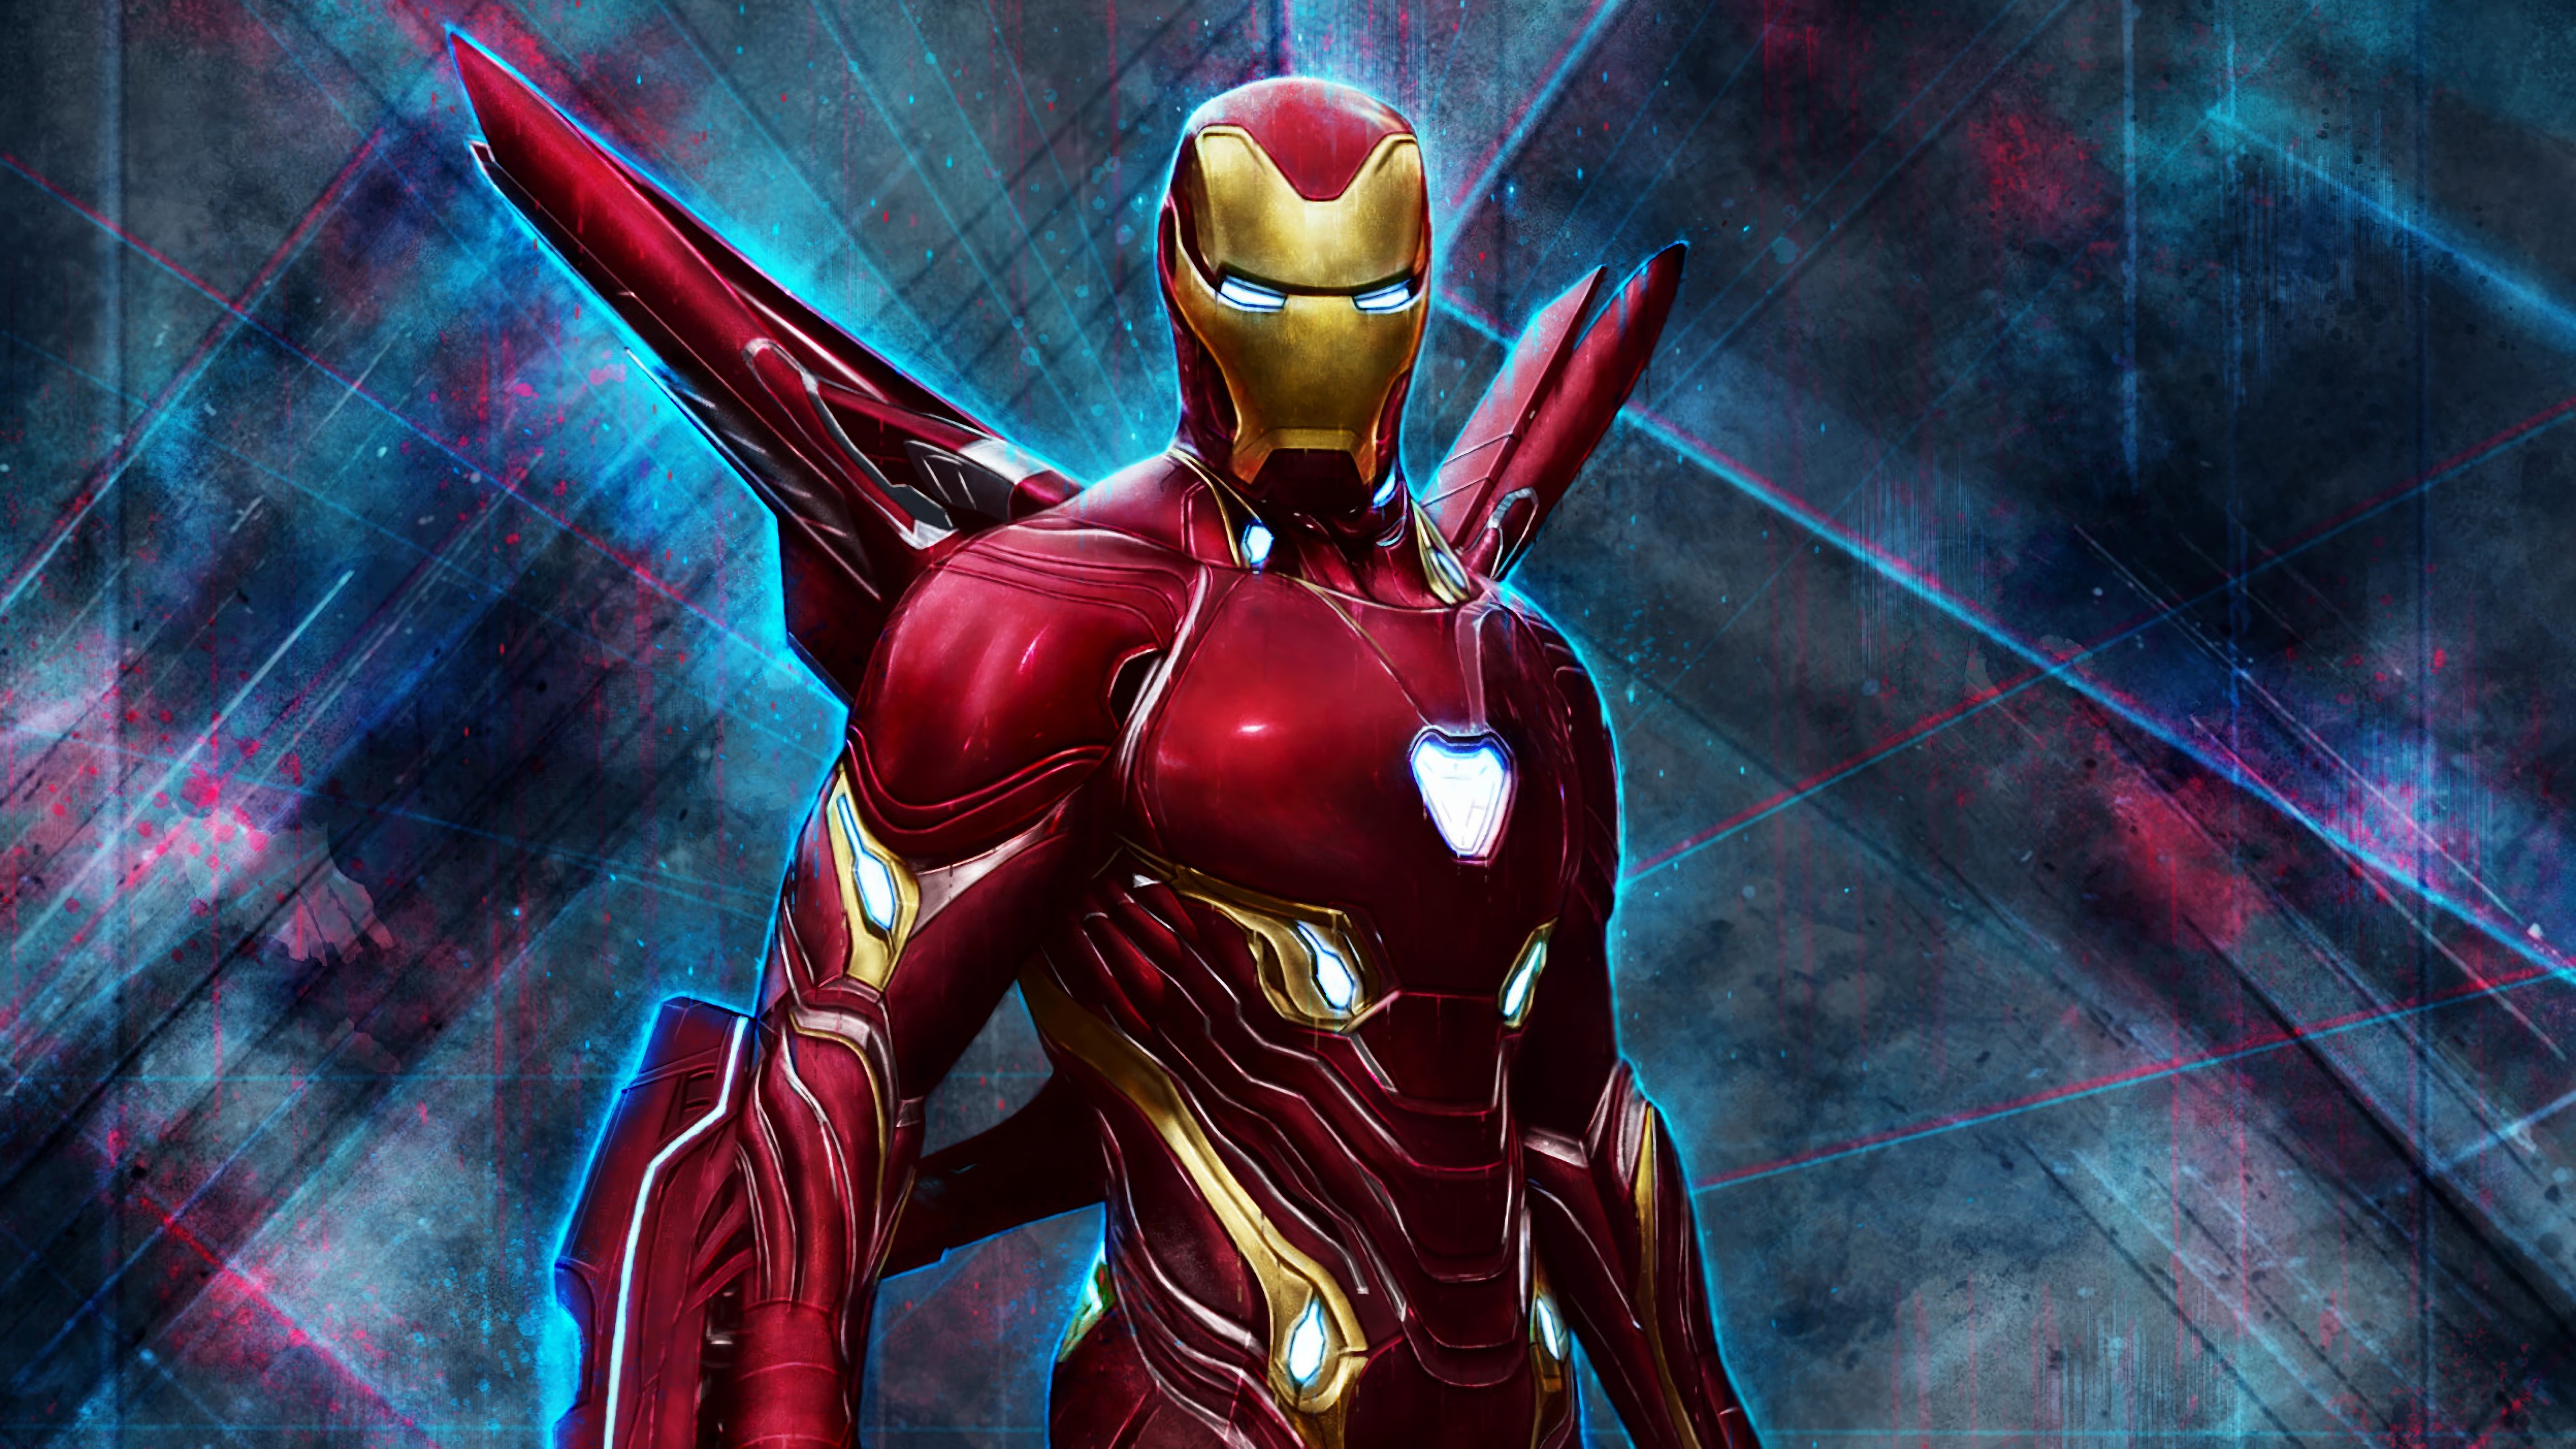 Iron Man Endgame Suit - HD Wallpaper 